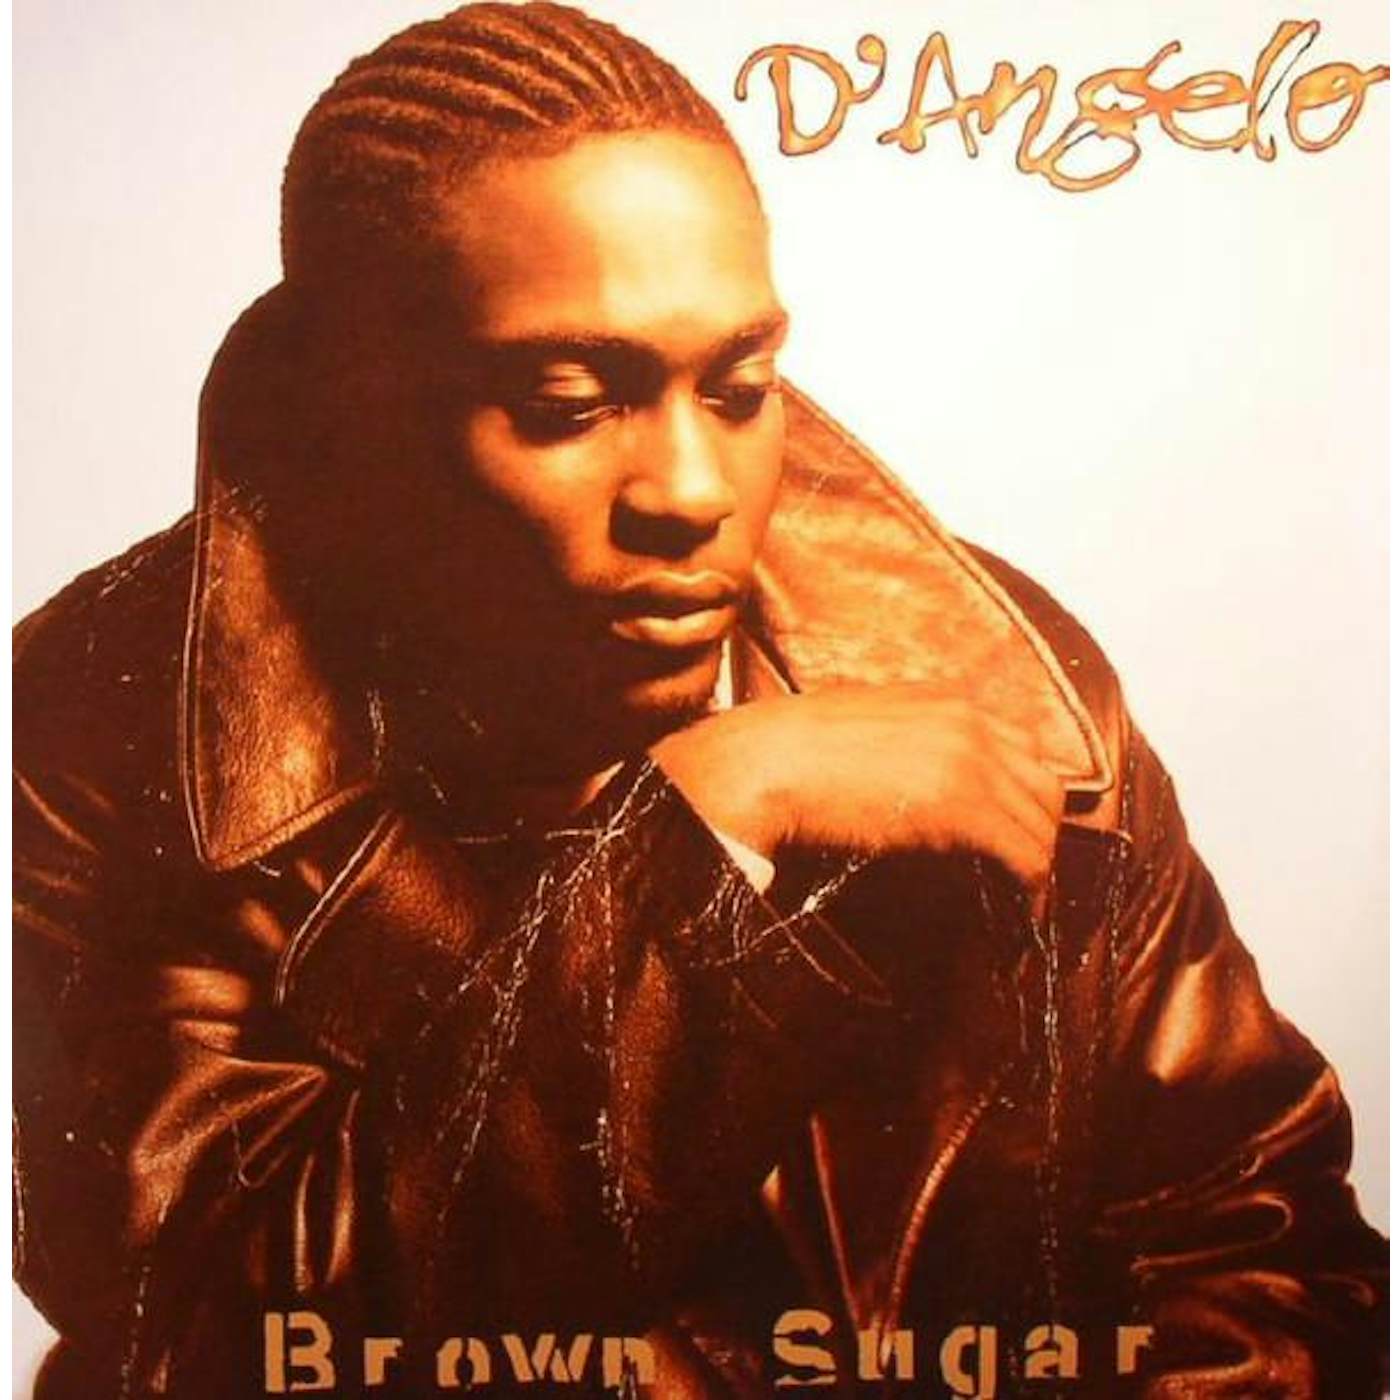 D'Angelo Brown Sugar Vinyl Record